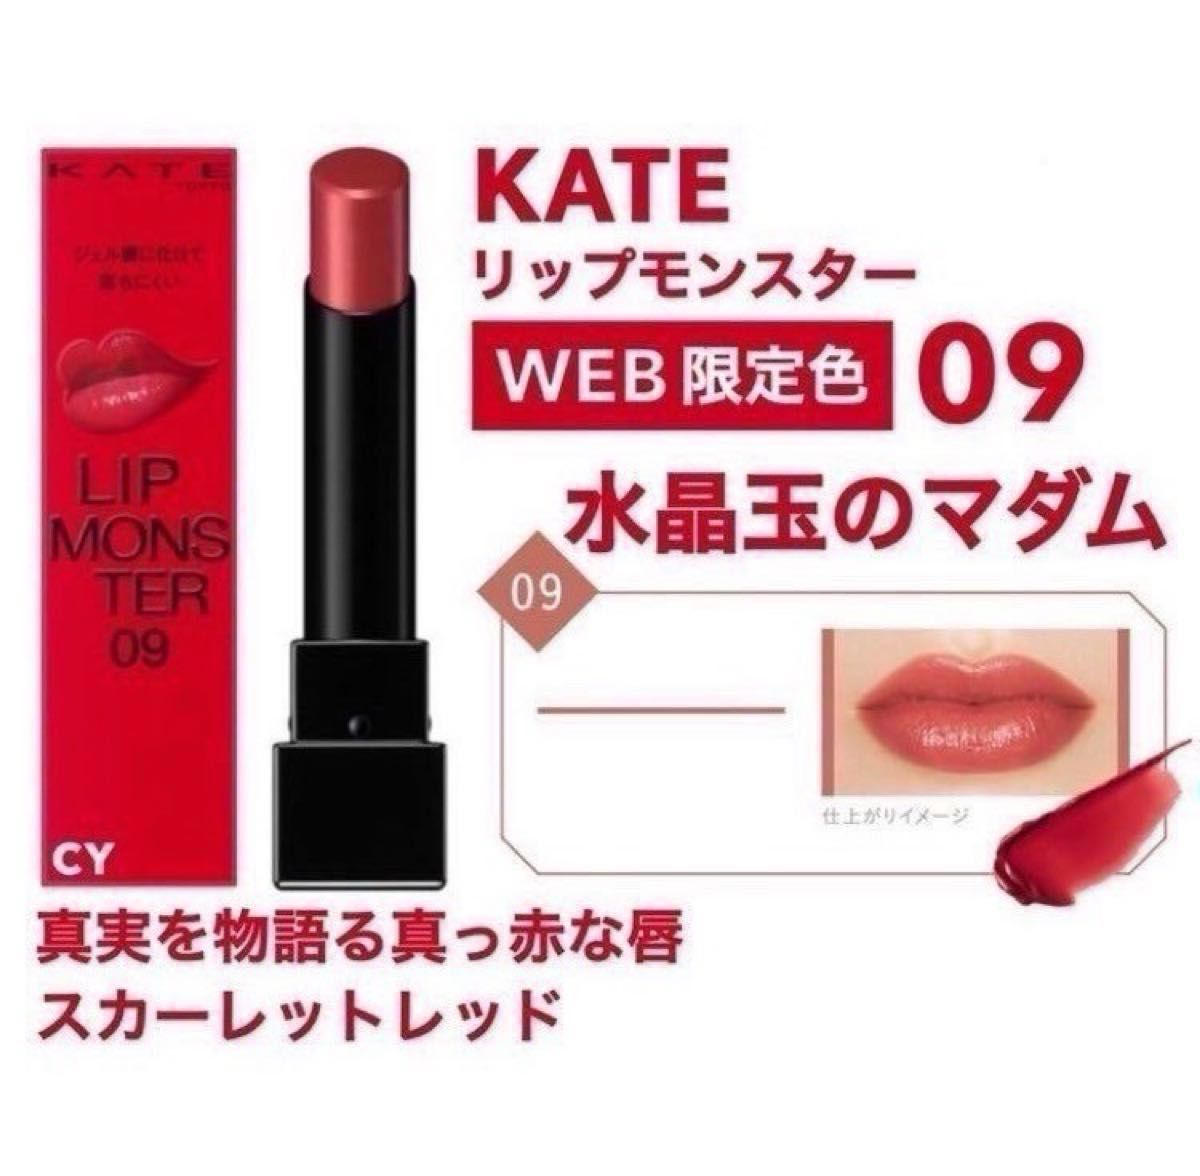 【Web限定色】 09 水晶玉のマダム リップモンスター KATE ケイト